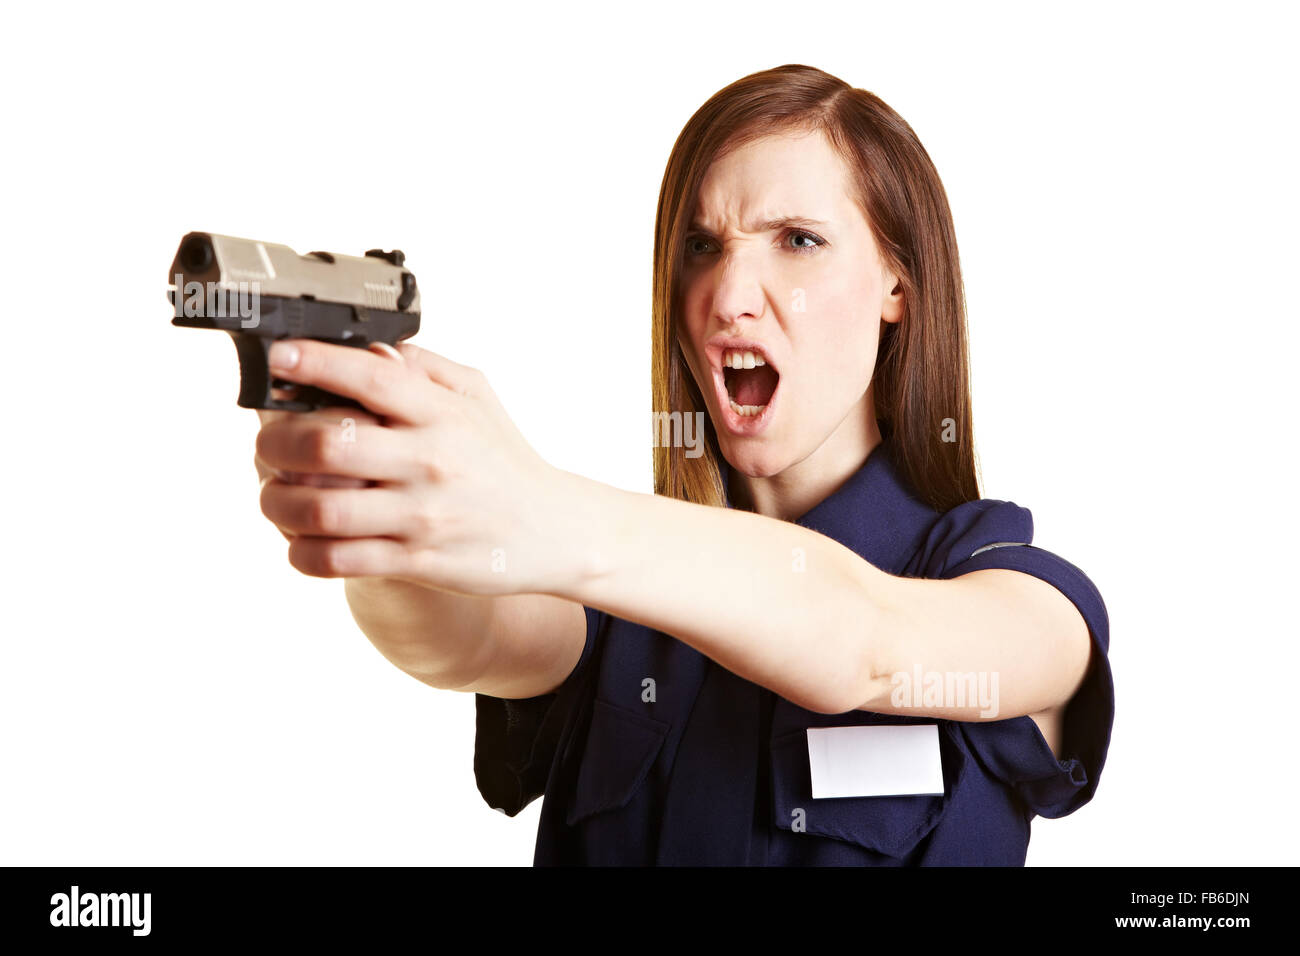 Polizistin schreien eine Warnung vor dem Abfeuern ihrer Waffe Stockfoto